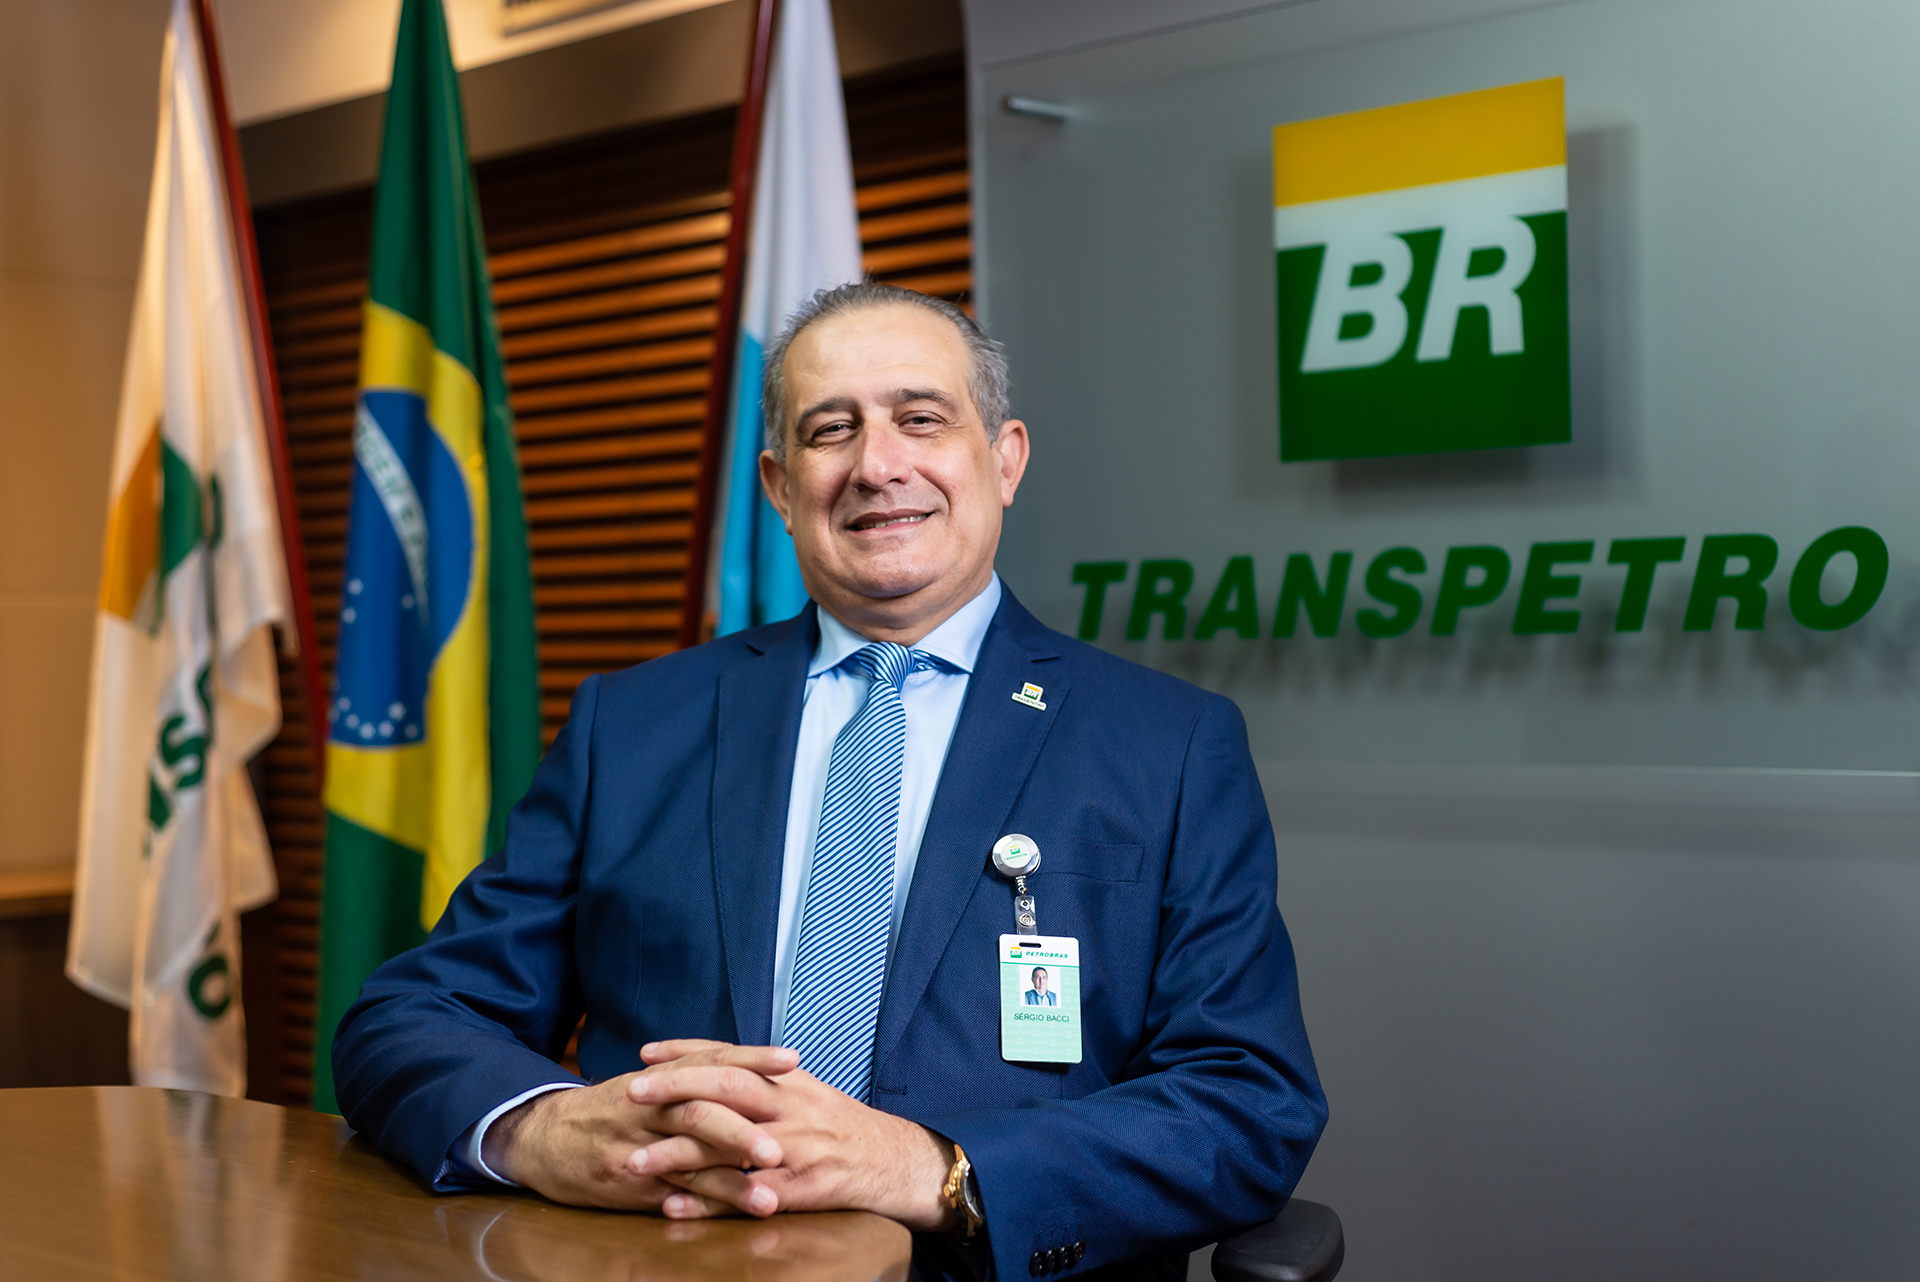 Conselho de Administração da Transpetro elege Sérgio Bacci como presidente